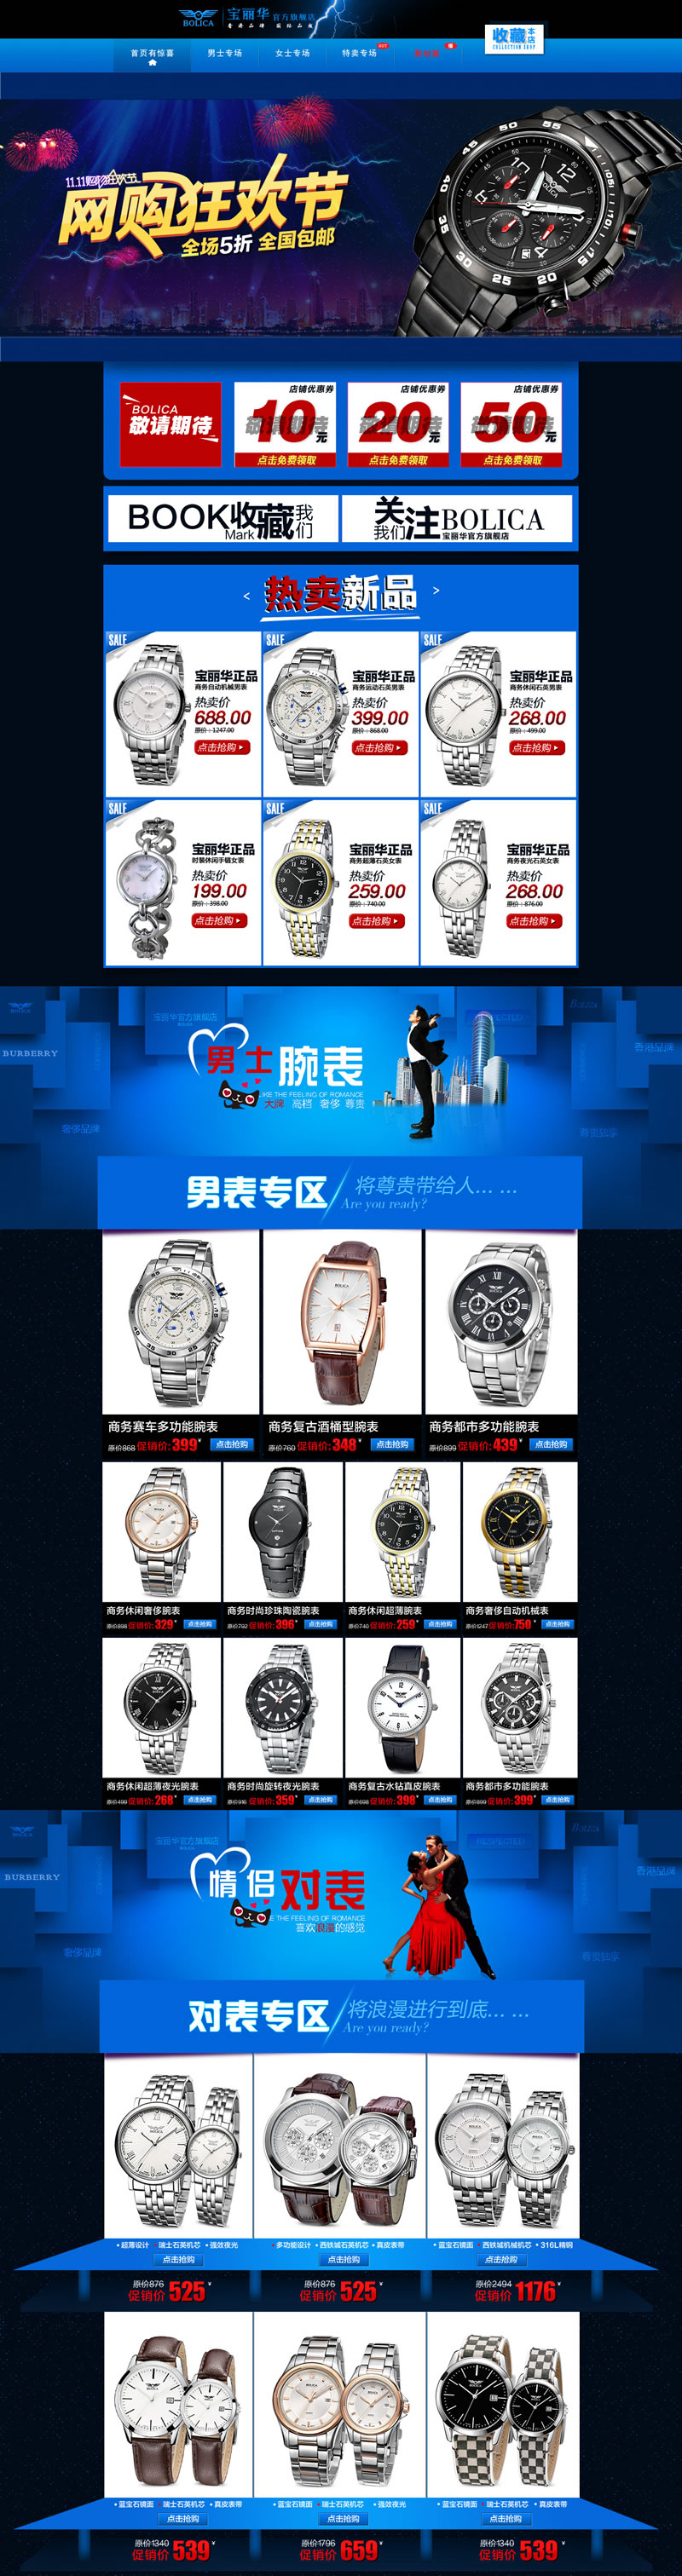 宝丽华官方旗舰店国际名表石英表腕表模板